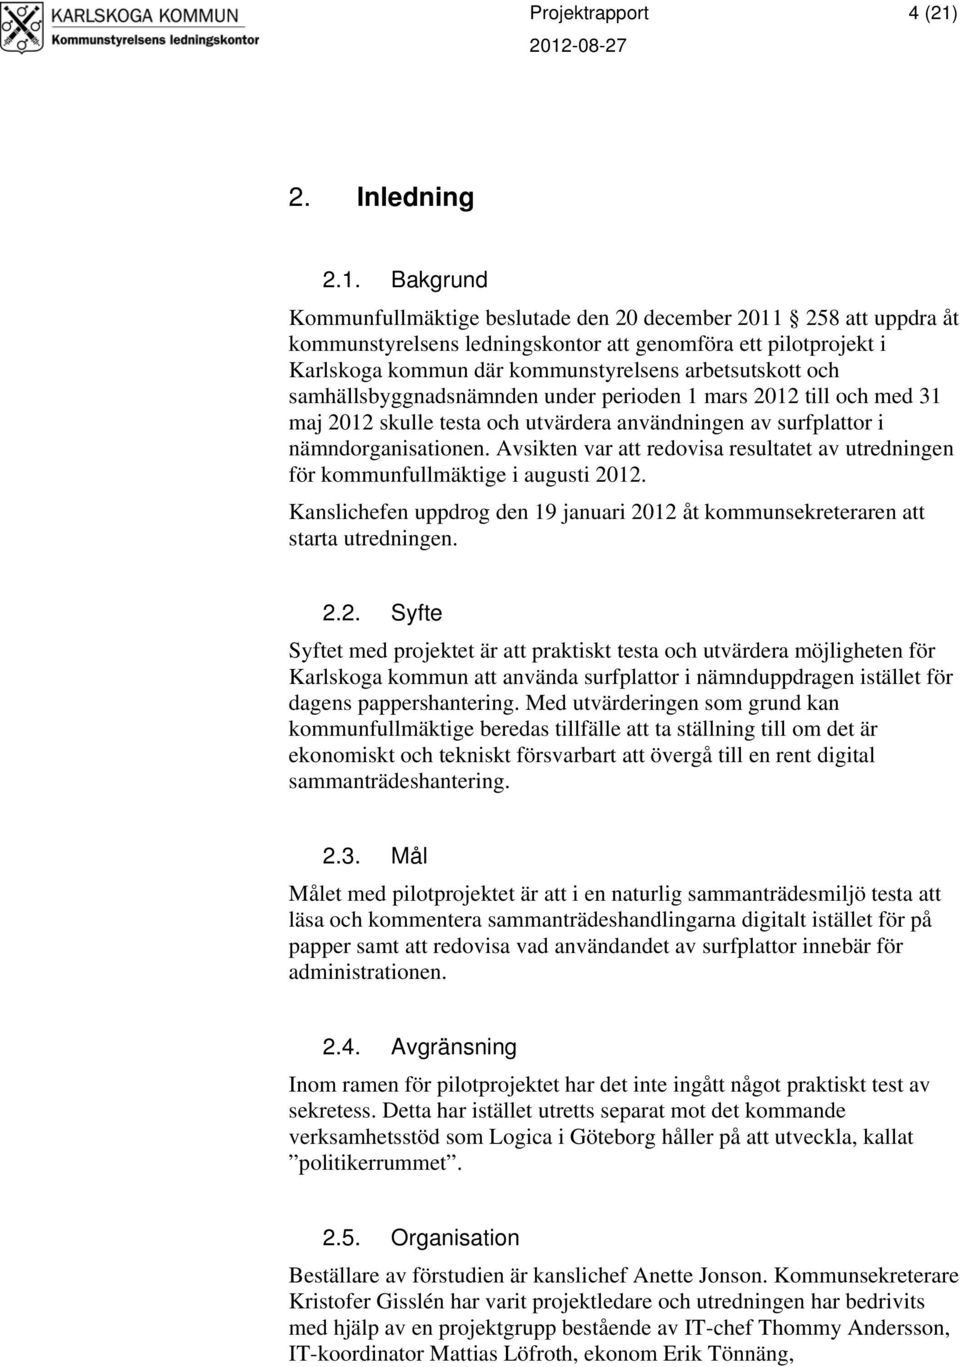 Bakgrund Kommunfullmäktige beslutade den 20 december 2011 258 att uppdra åt kommunstyrelsens ledningskontor att genomföra ett pilotprojekt i Karlskoga kommun där kommunstyrelsens arbetsutskott och